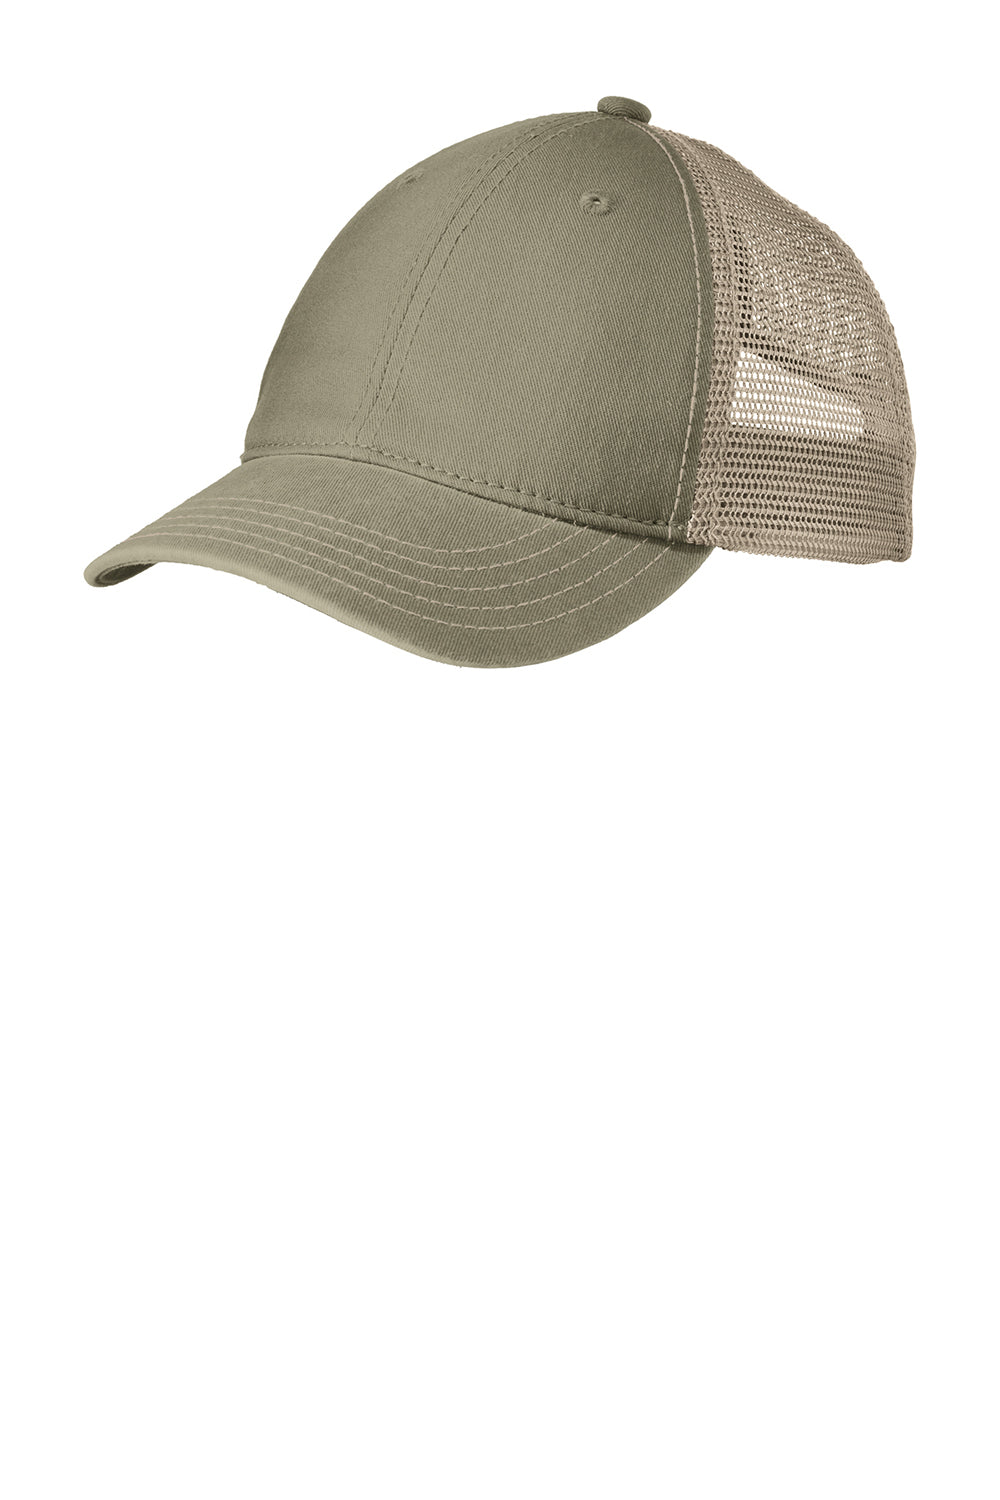 District DT630 Mens Adjustable Hat Olive Green/Khaki Brown Front